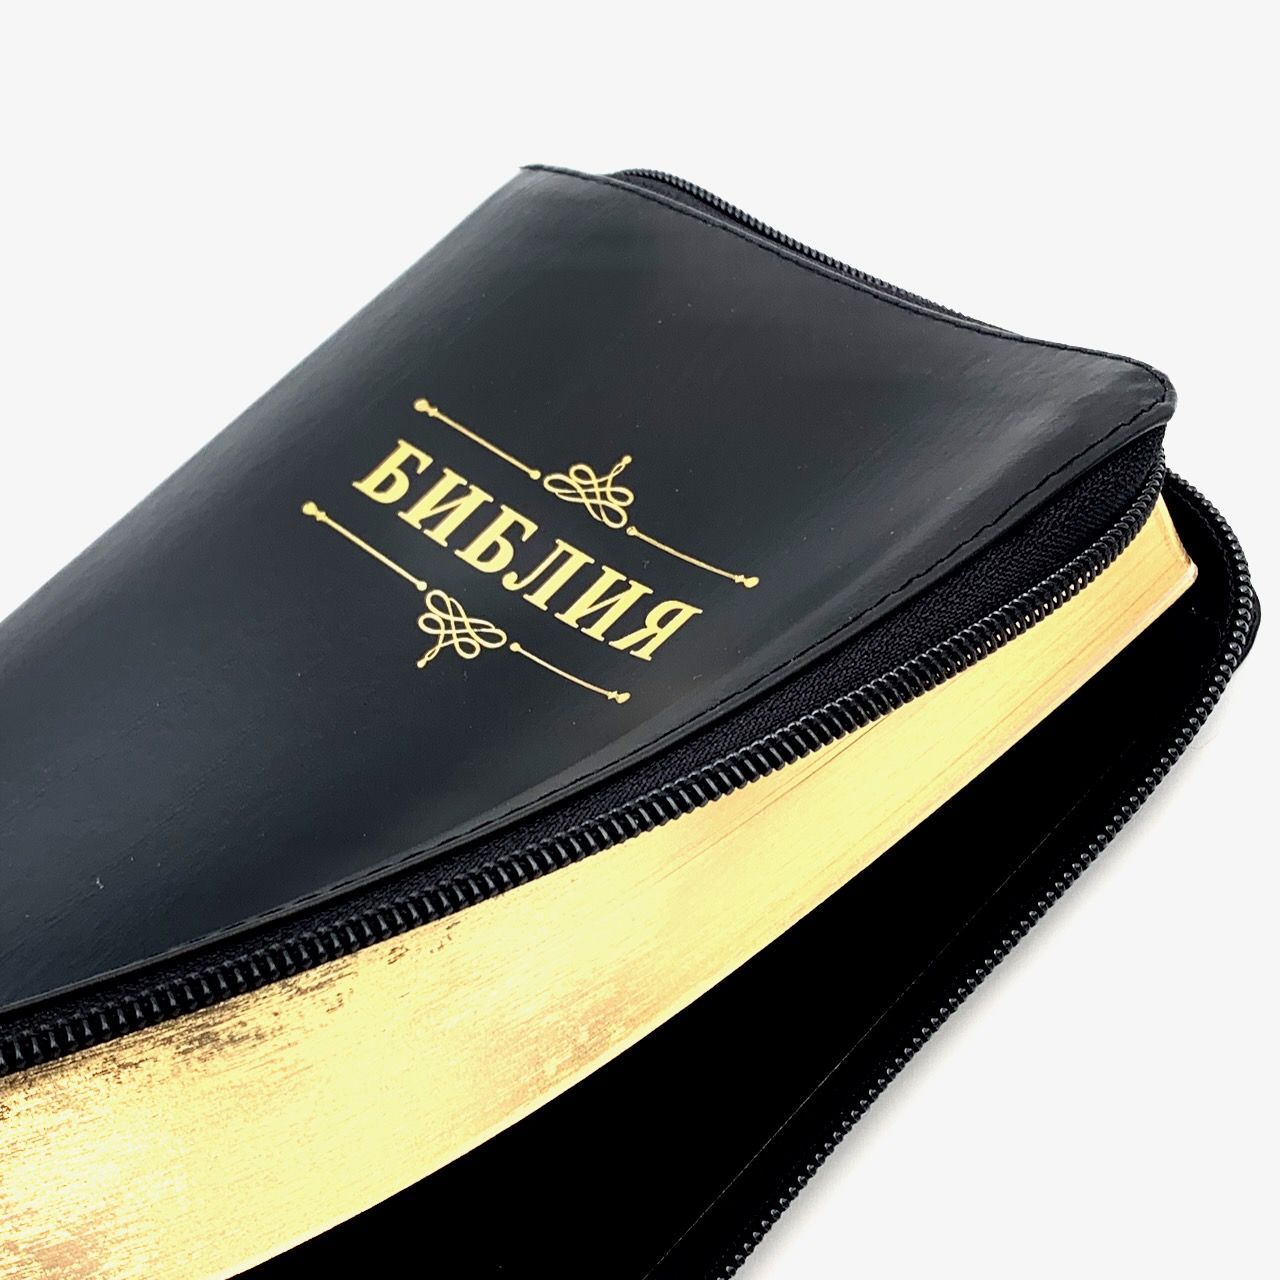 Библия 055z код 23055-18 надпись "Библия с вензелем", кожаный переплет на молнии, цвет черный с прожилками, средний формат, 143*220 мм